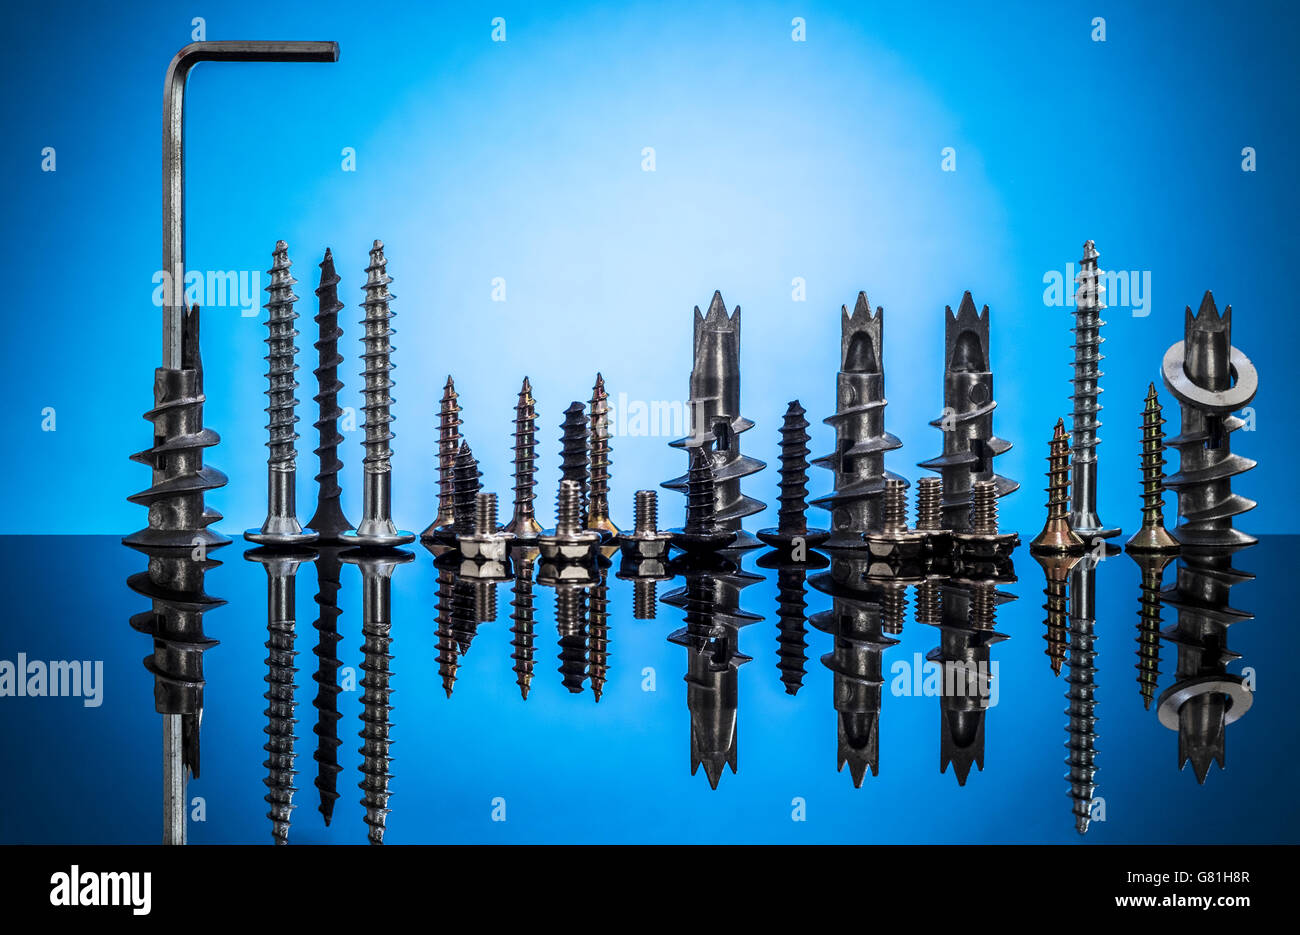 Sammlung von Schrauben und Bolzen auf blauem Grund repräsentieren die Skyline einer Stadt und ihre Reflexion Stockfoto